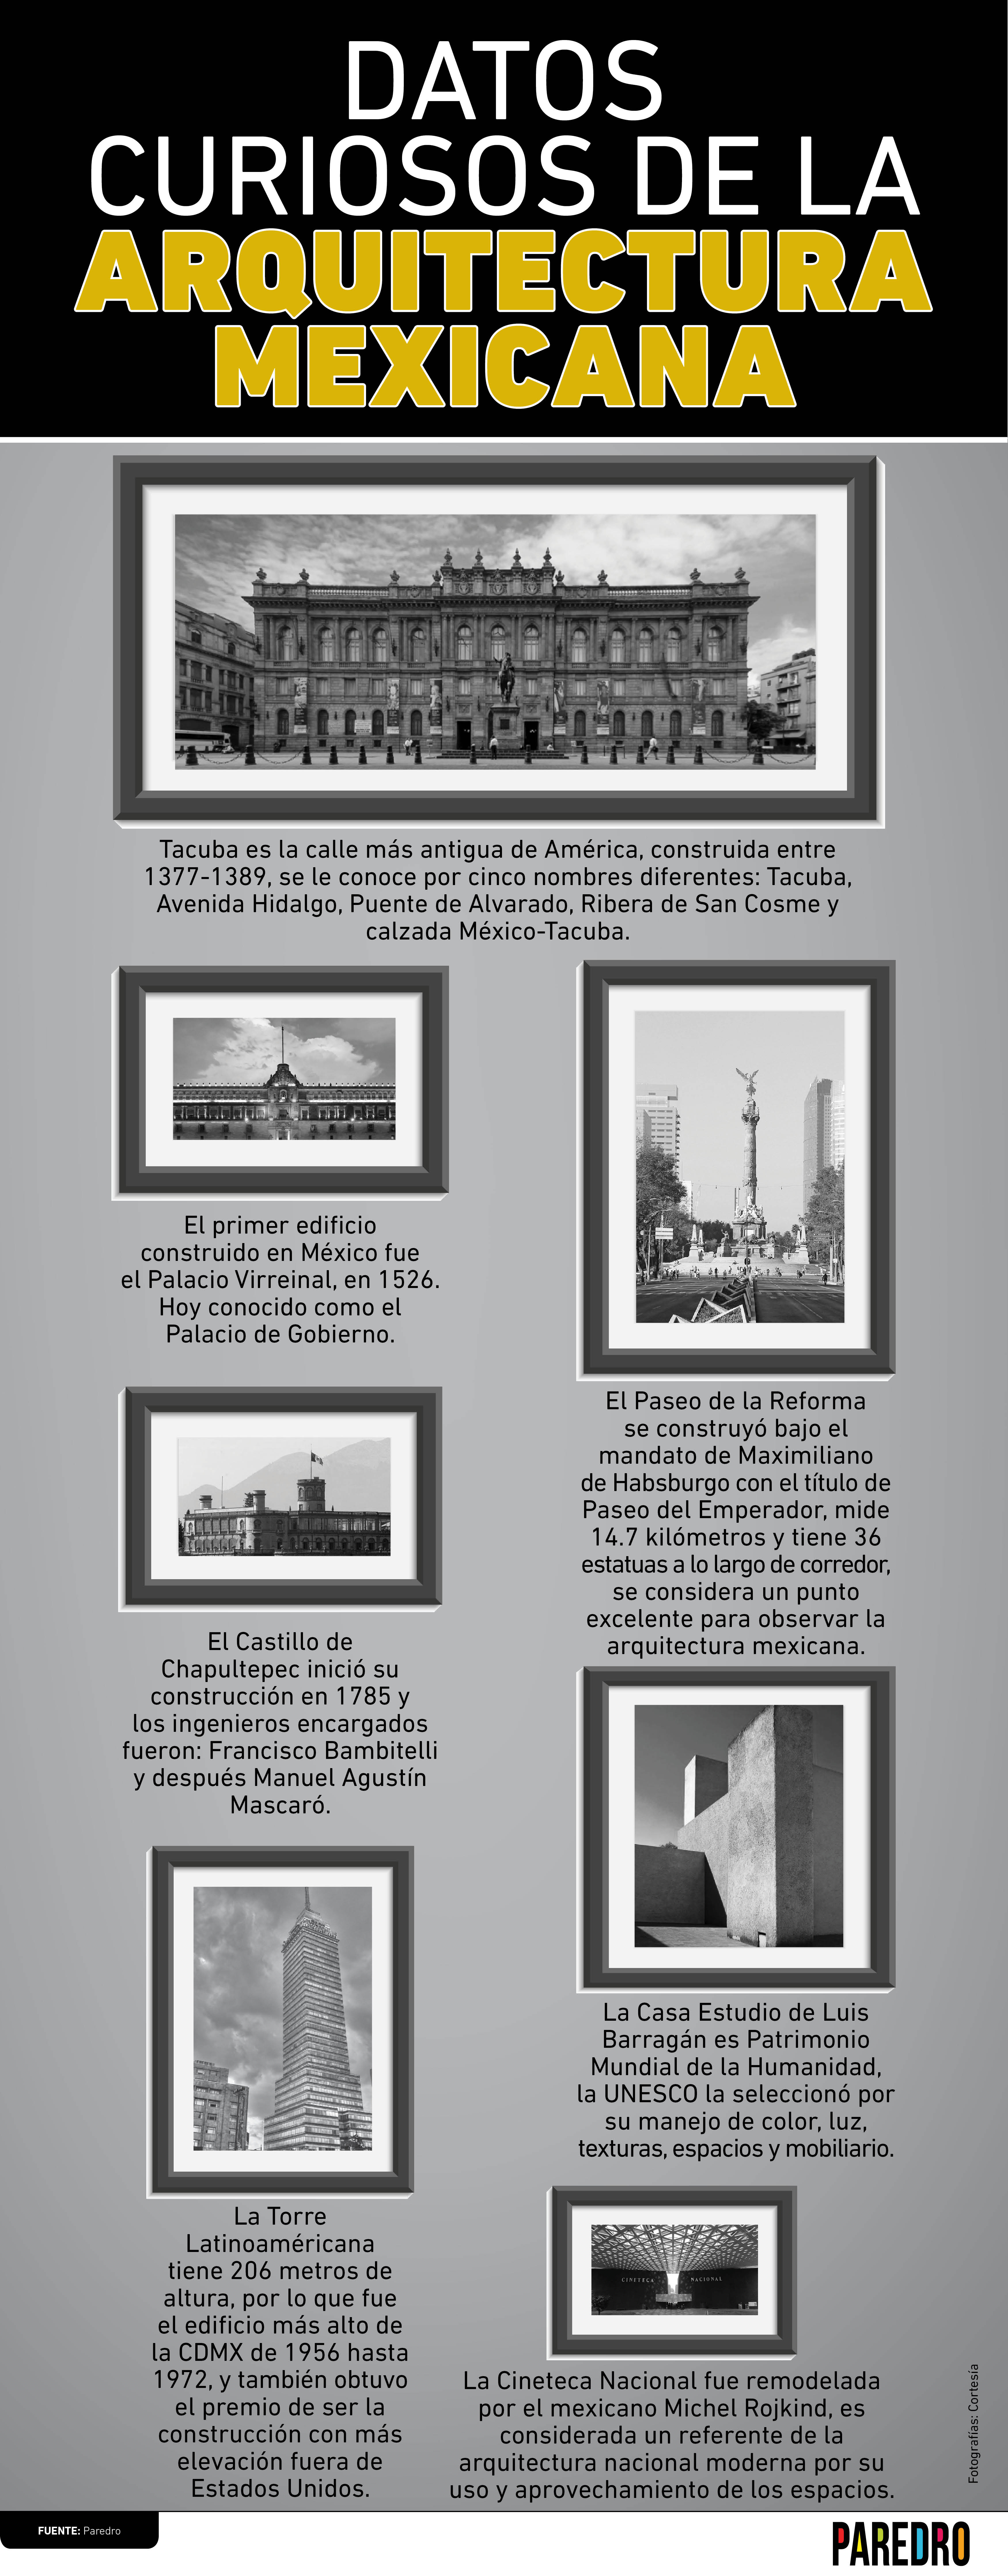 ¿Conoces estos datos curiosos de la Arquitectura Mexicana? La CDMX tiene mucho que mostrar y sus construcciones son algunas de ellas.